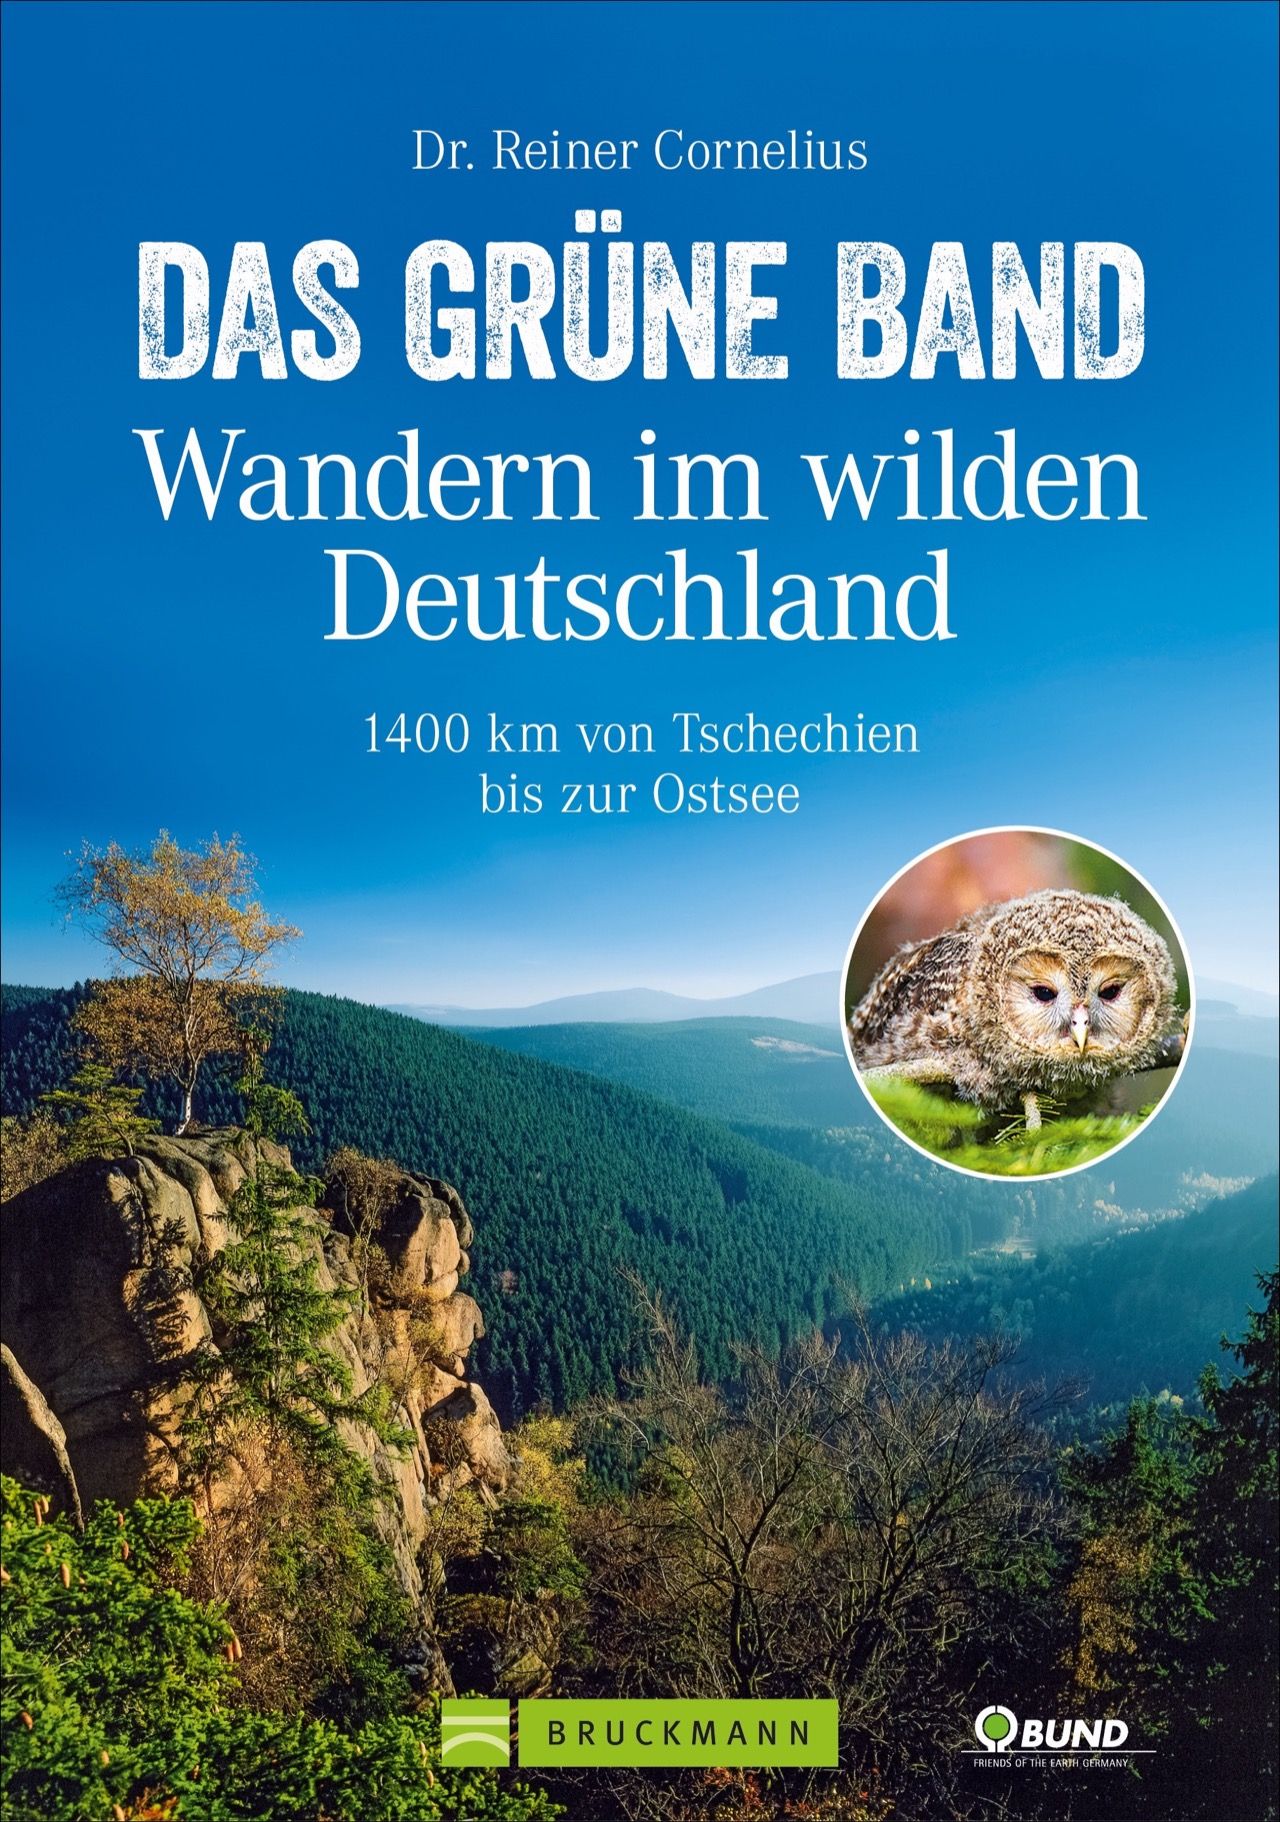 Online bestellen: Wandelgids Das Grüne Band - Wandern im wilden Deutschland | Bruckmann Verlag